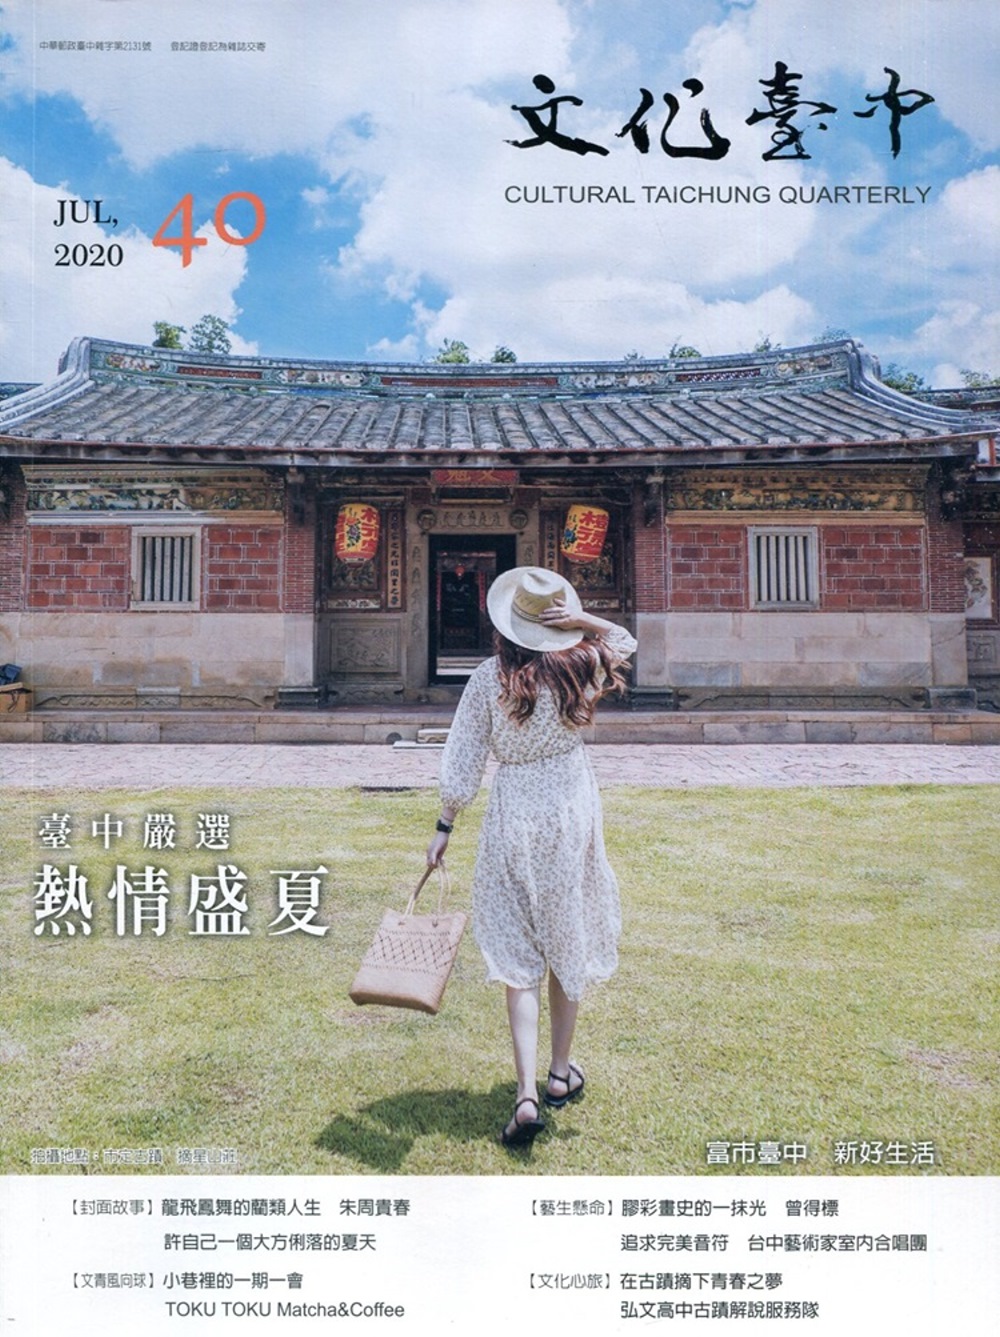 文化臺中季刊40期(2020.07)